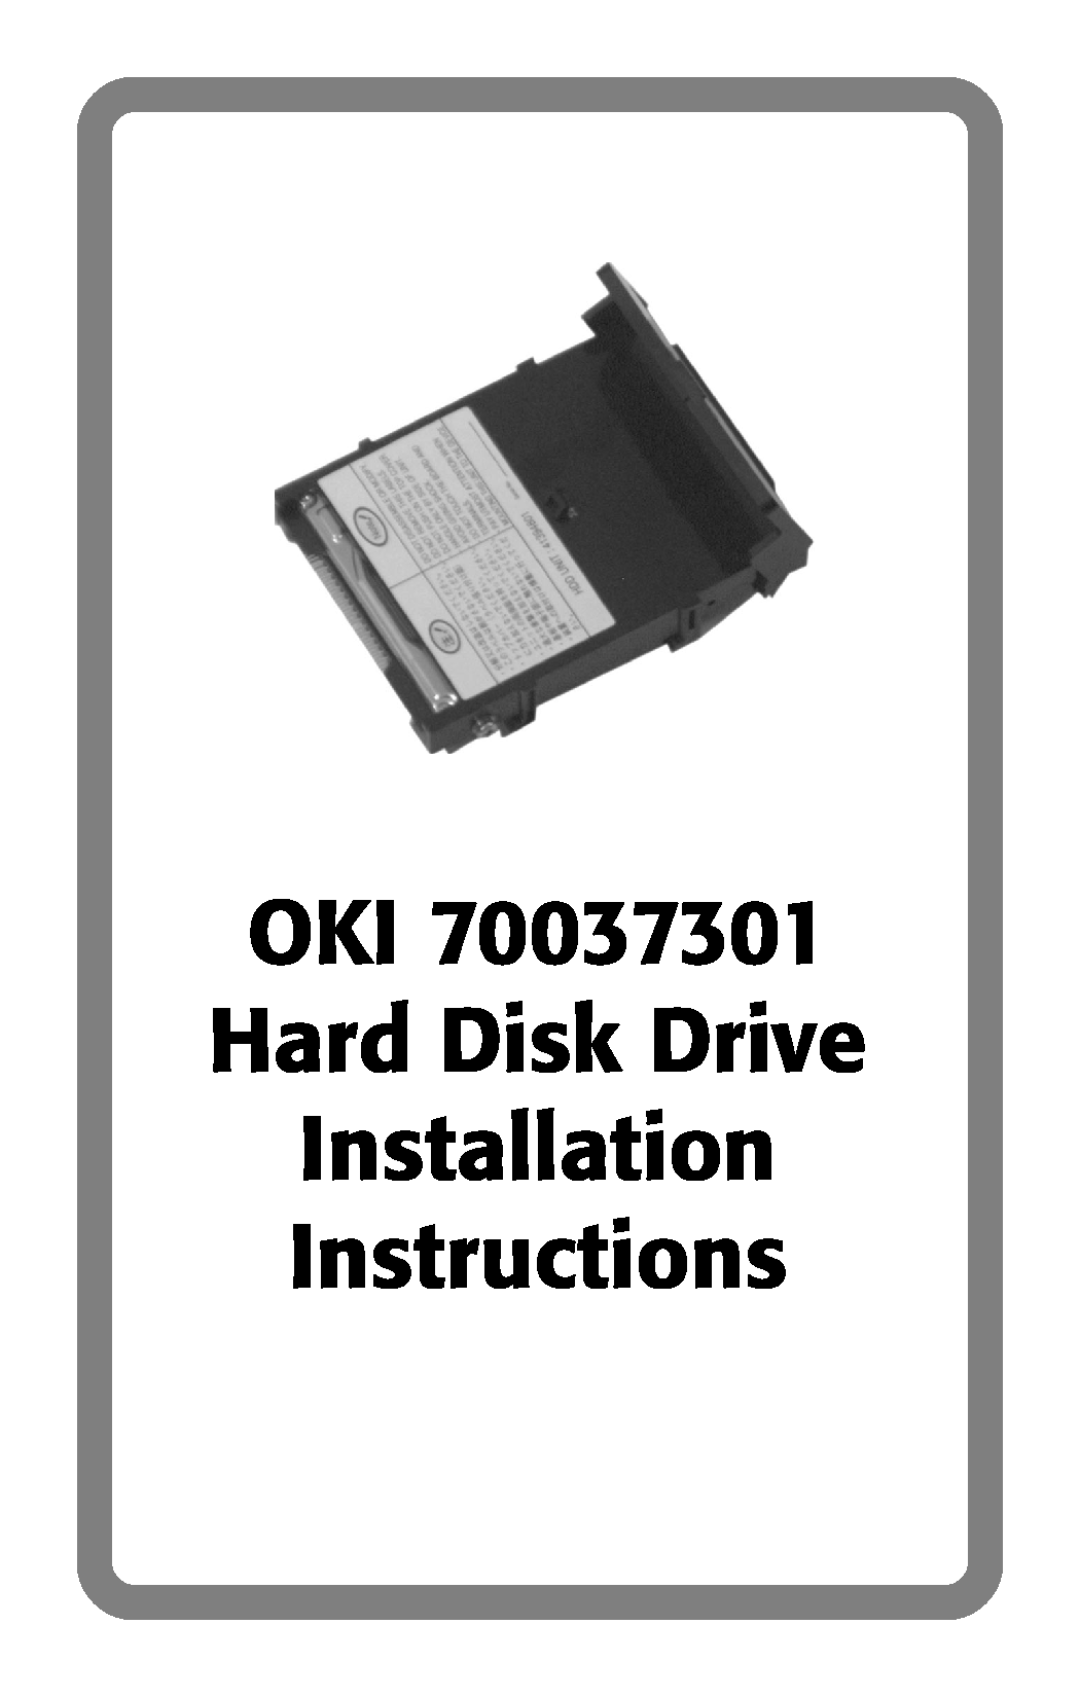 Oki 70037301 installation instructions OKI Hard Disk Drive Installation Instructions 